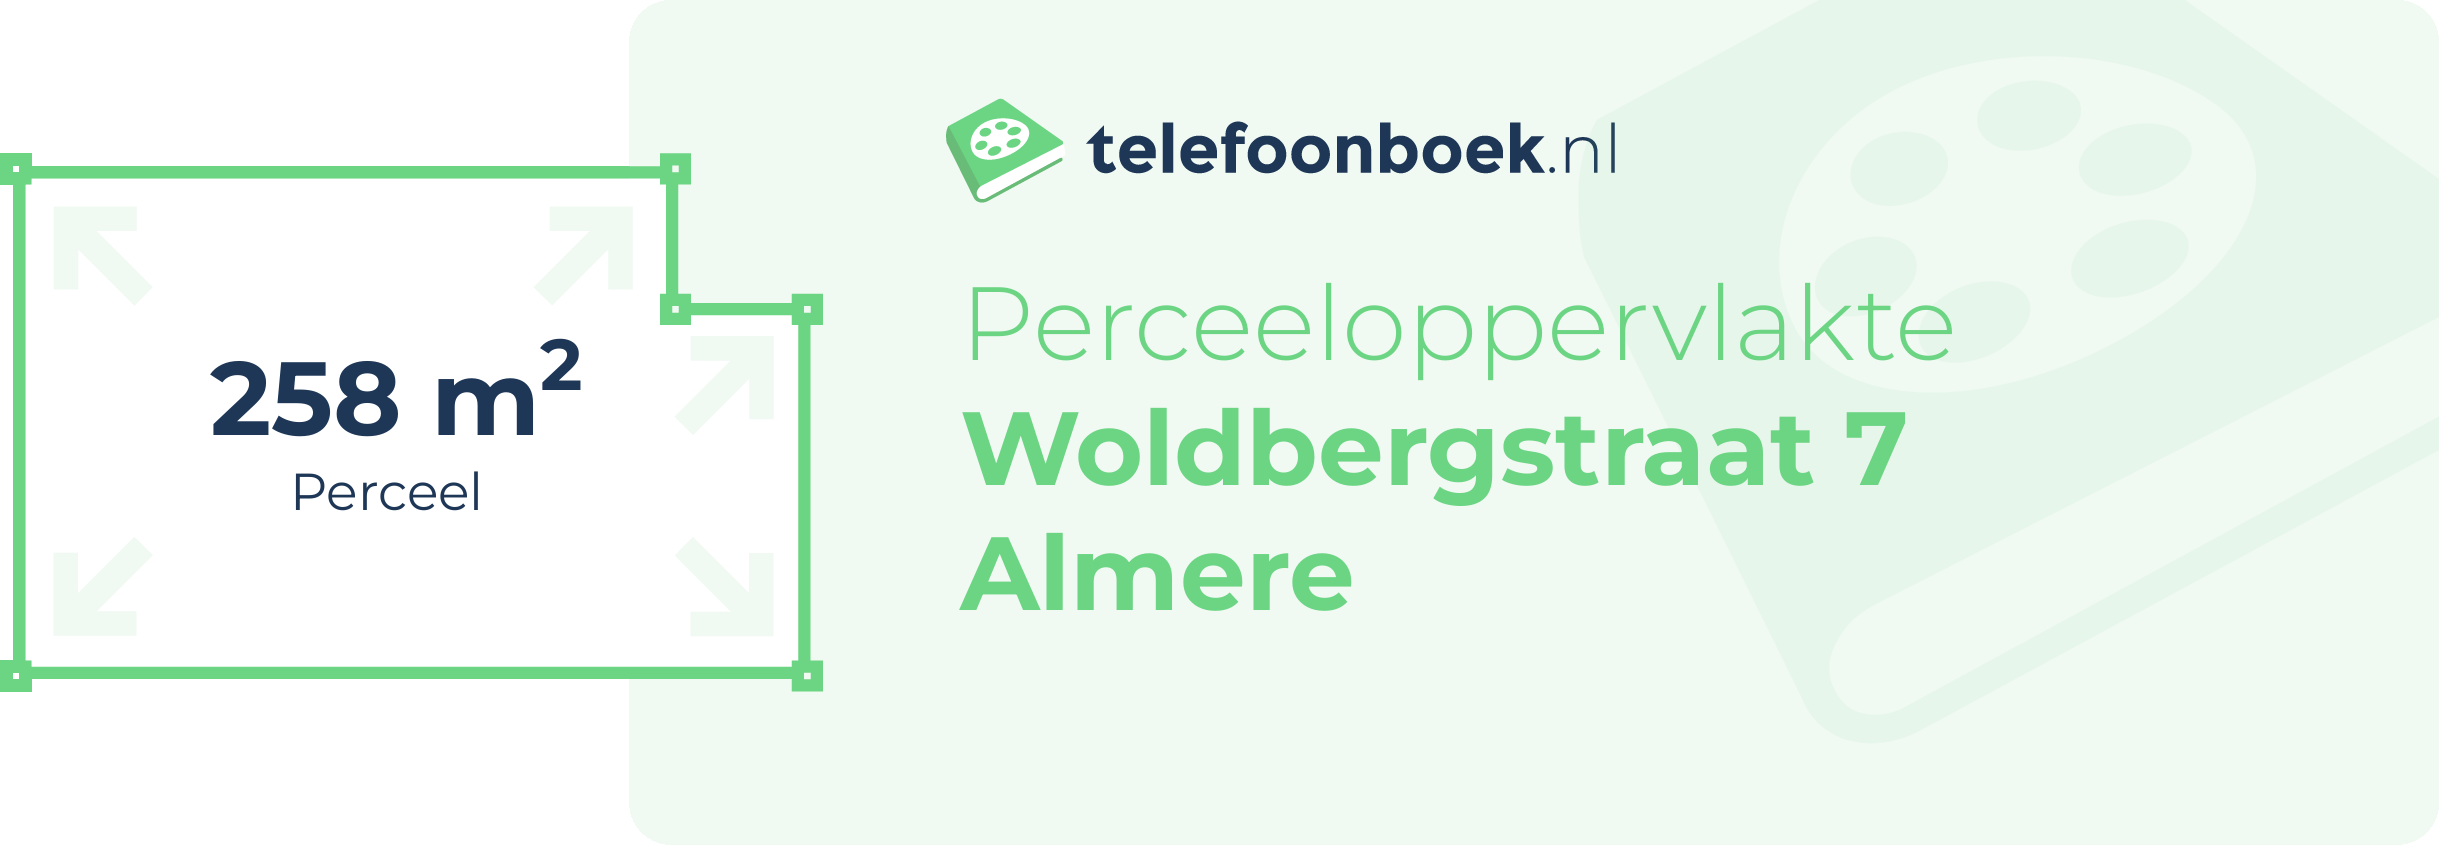 Perceeloppervlakte Woldbergstraat 7 Almere